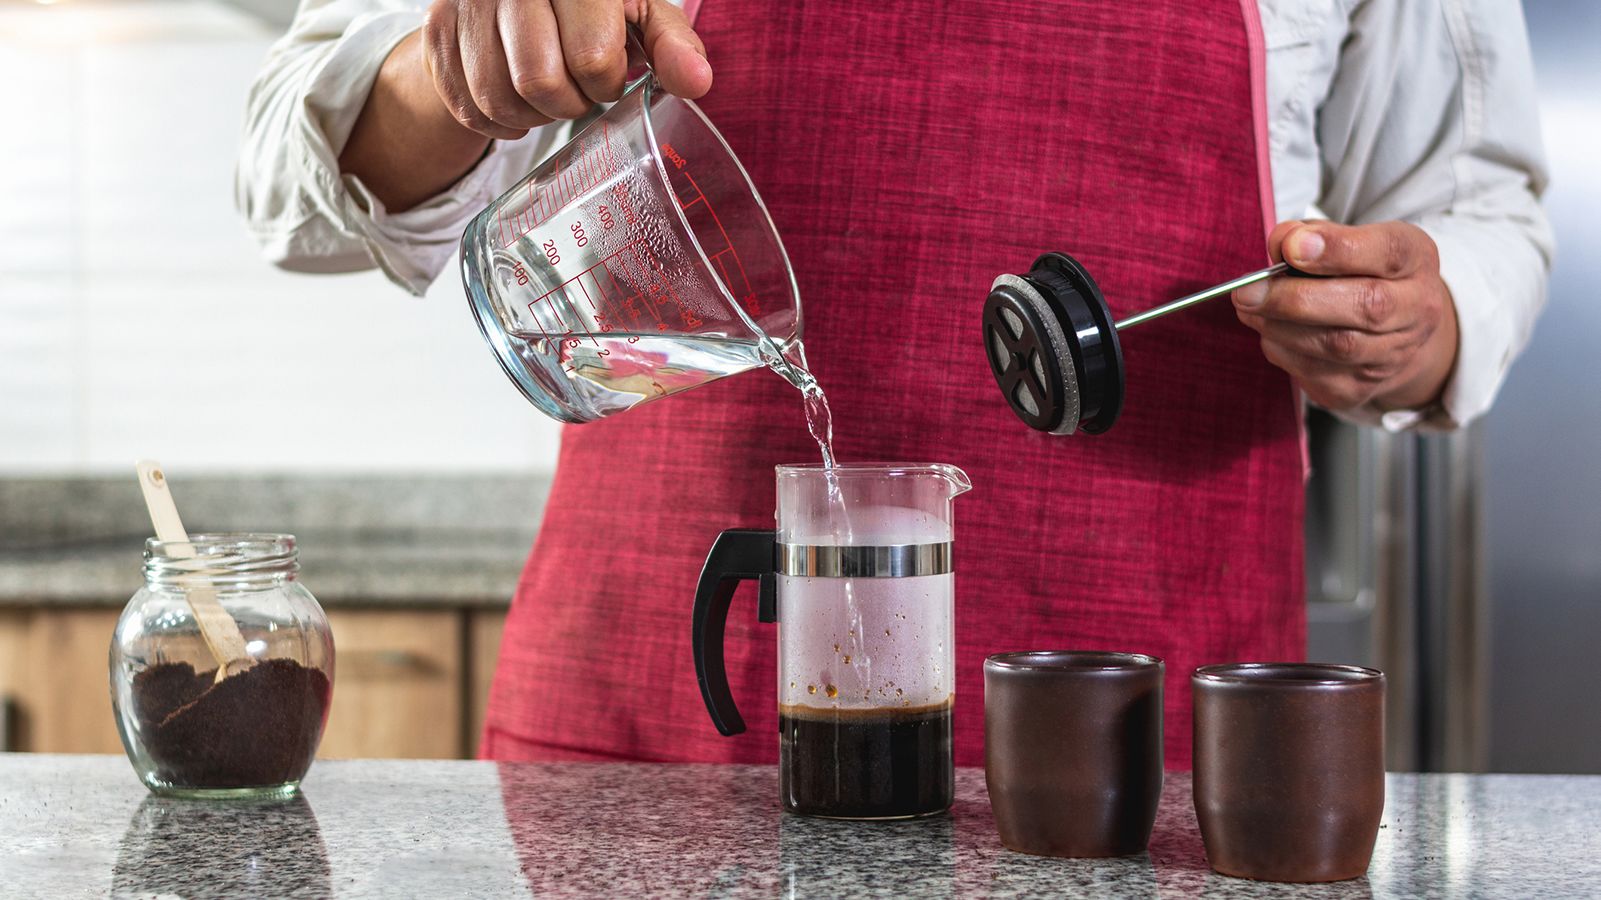 Urnex Coffee Mug Cleaner - I Have a Bean